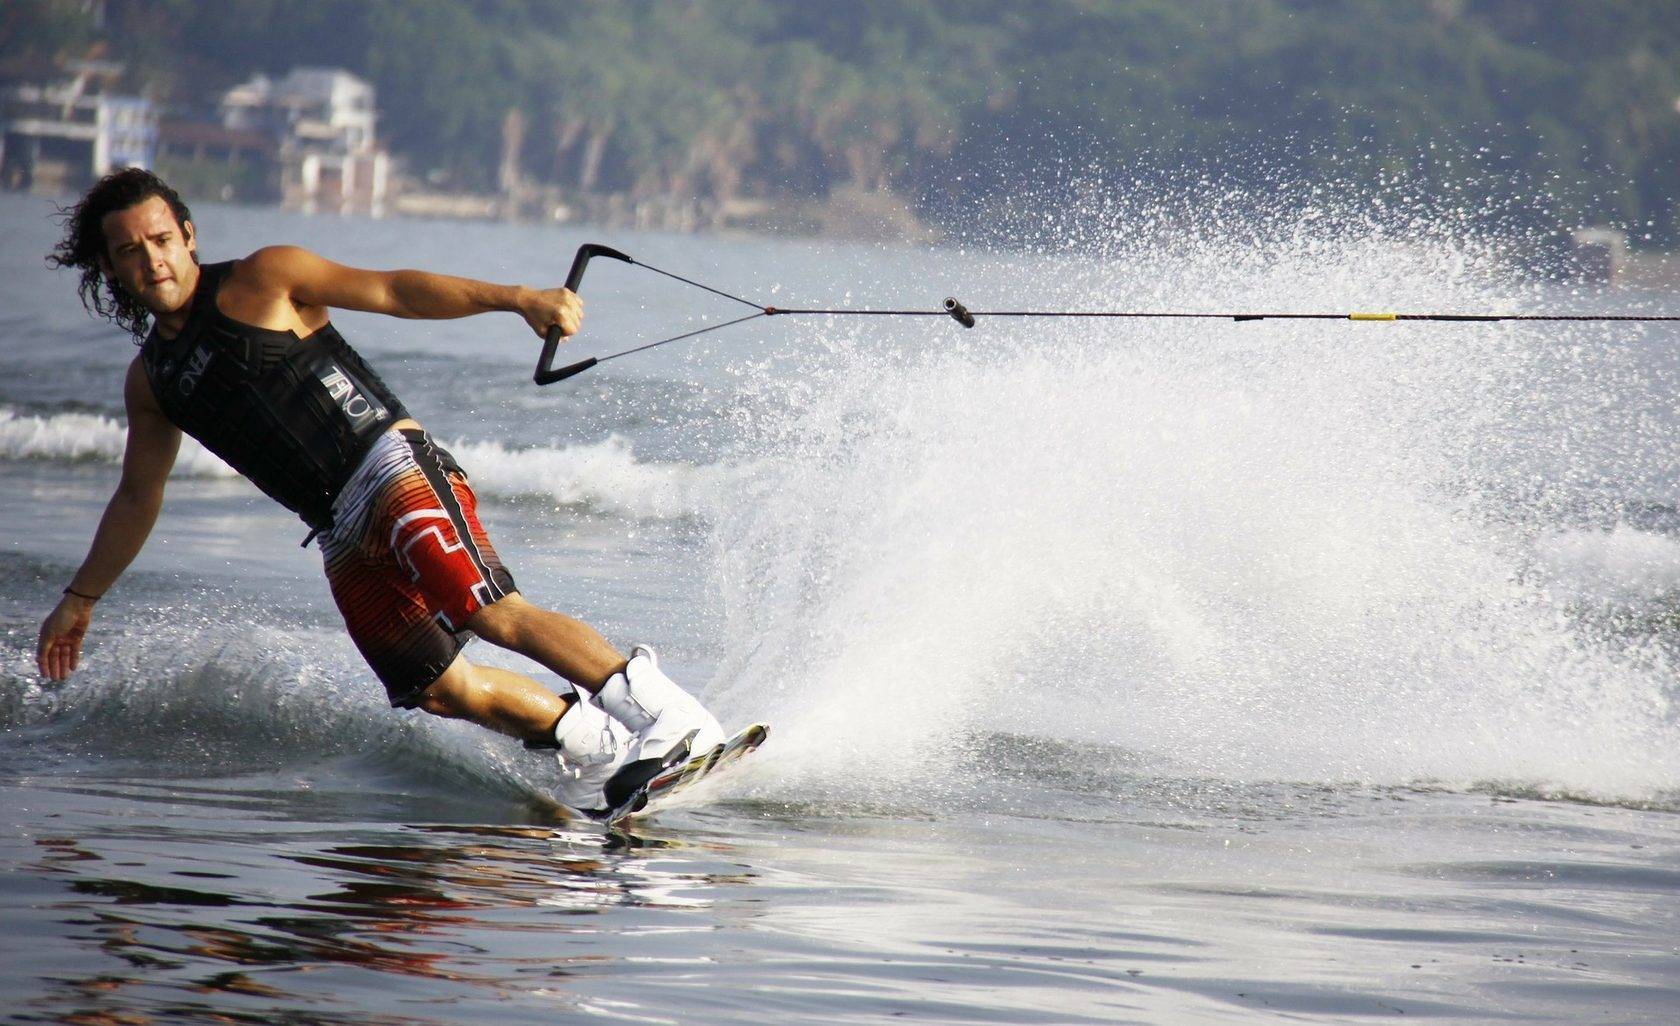 Водные лыжи - вид активного водного вида спорта и отдыха
водные лыжи - вид активного водного вида спорта и отдыха